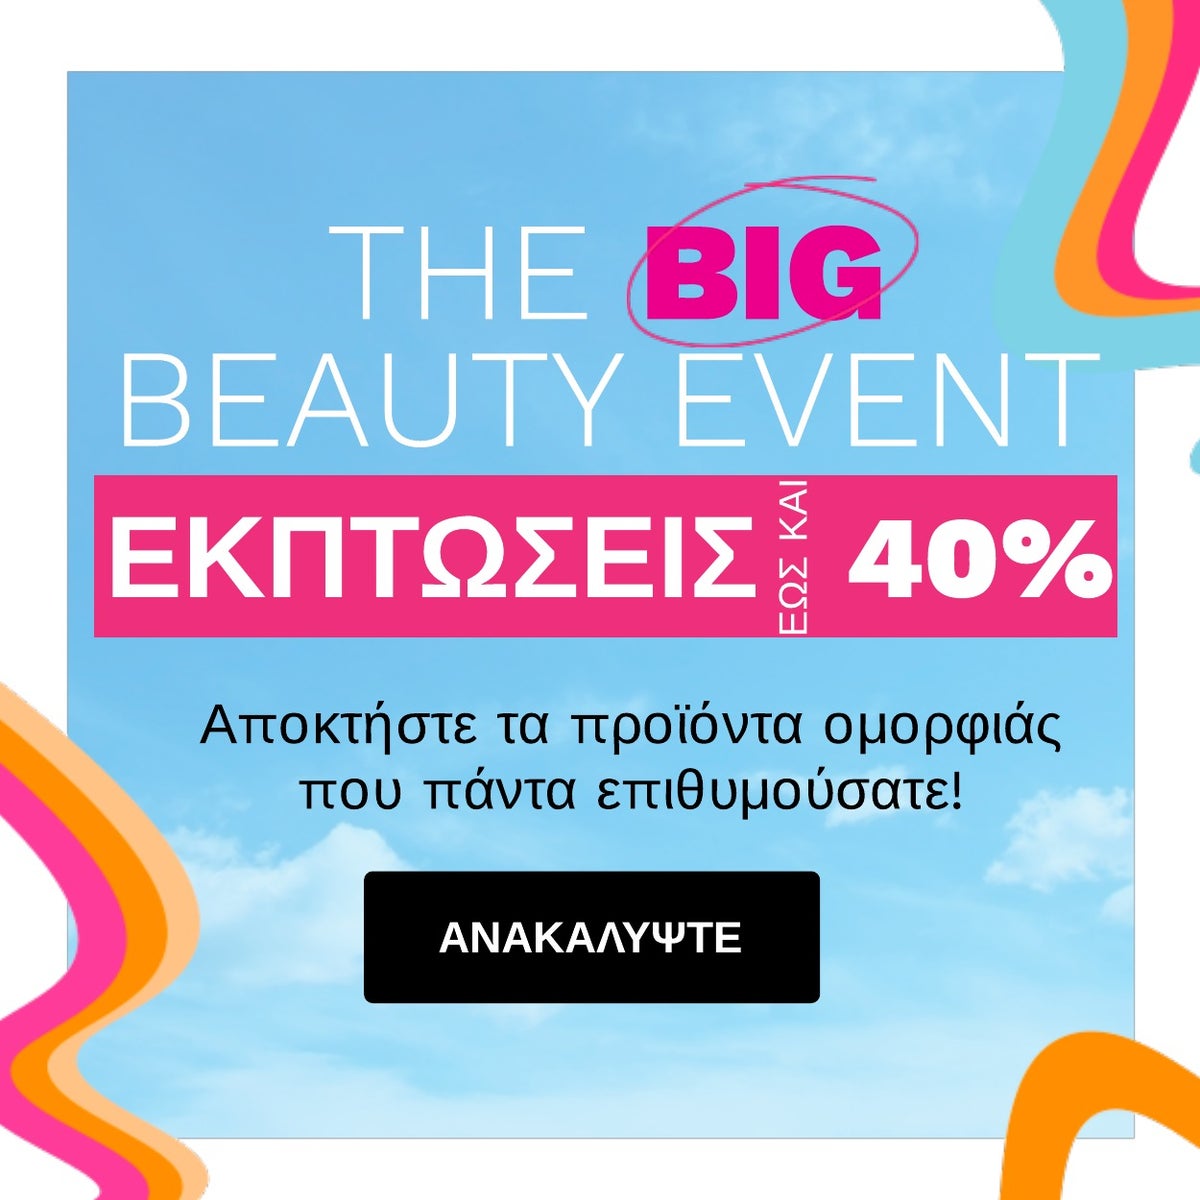 Big Beauty Event - Εκπτώσεις έως και 40%!